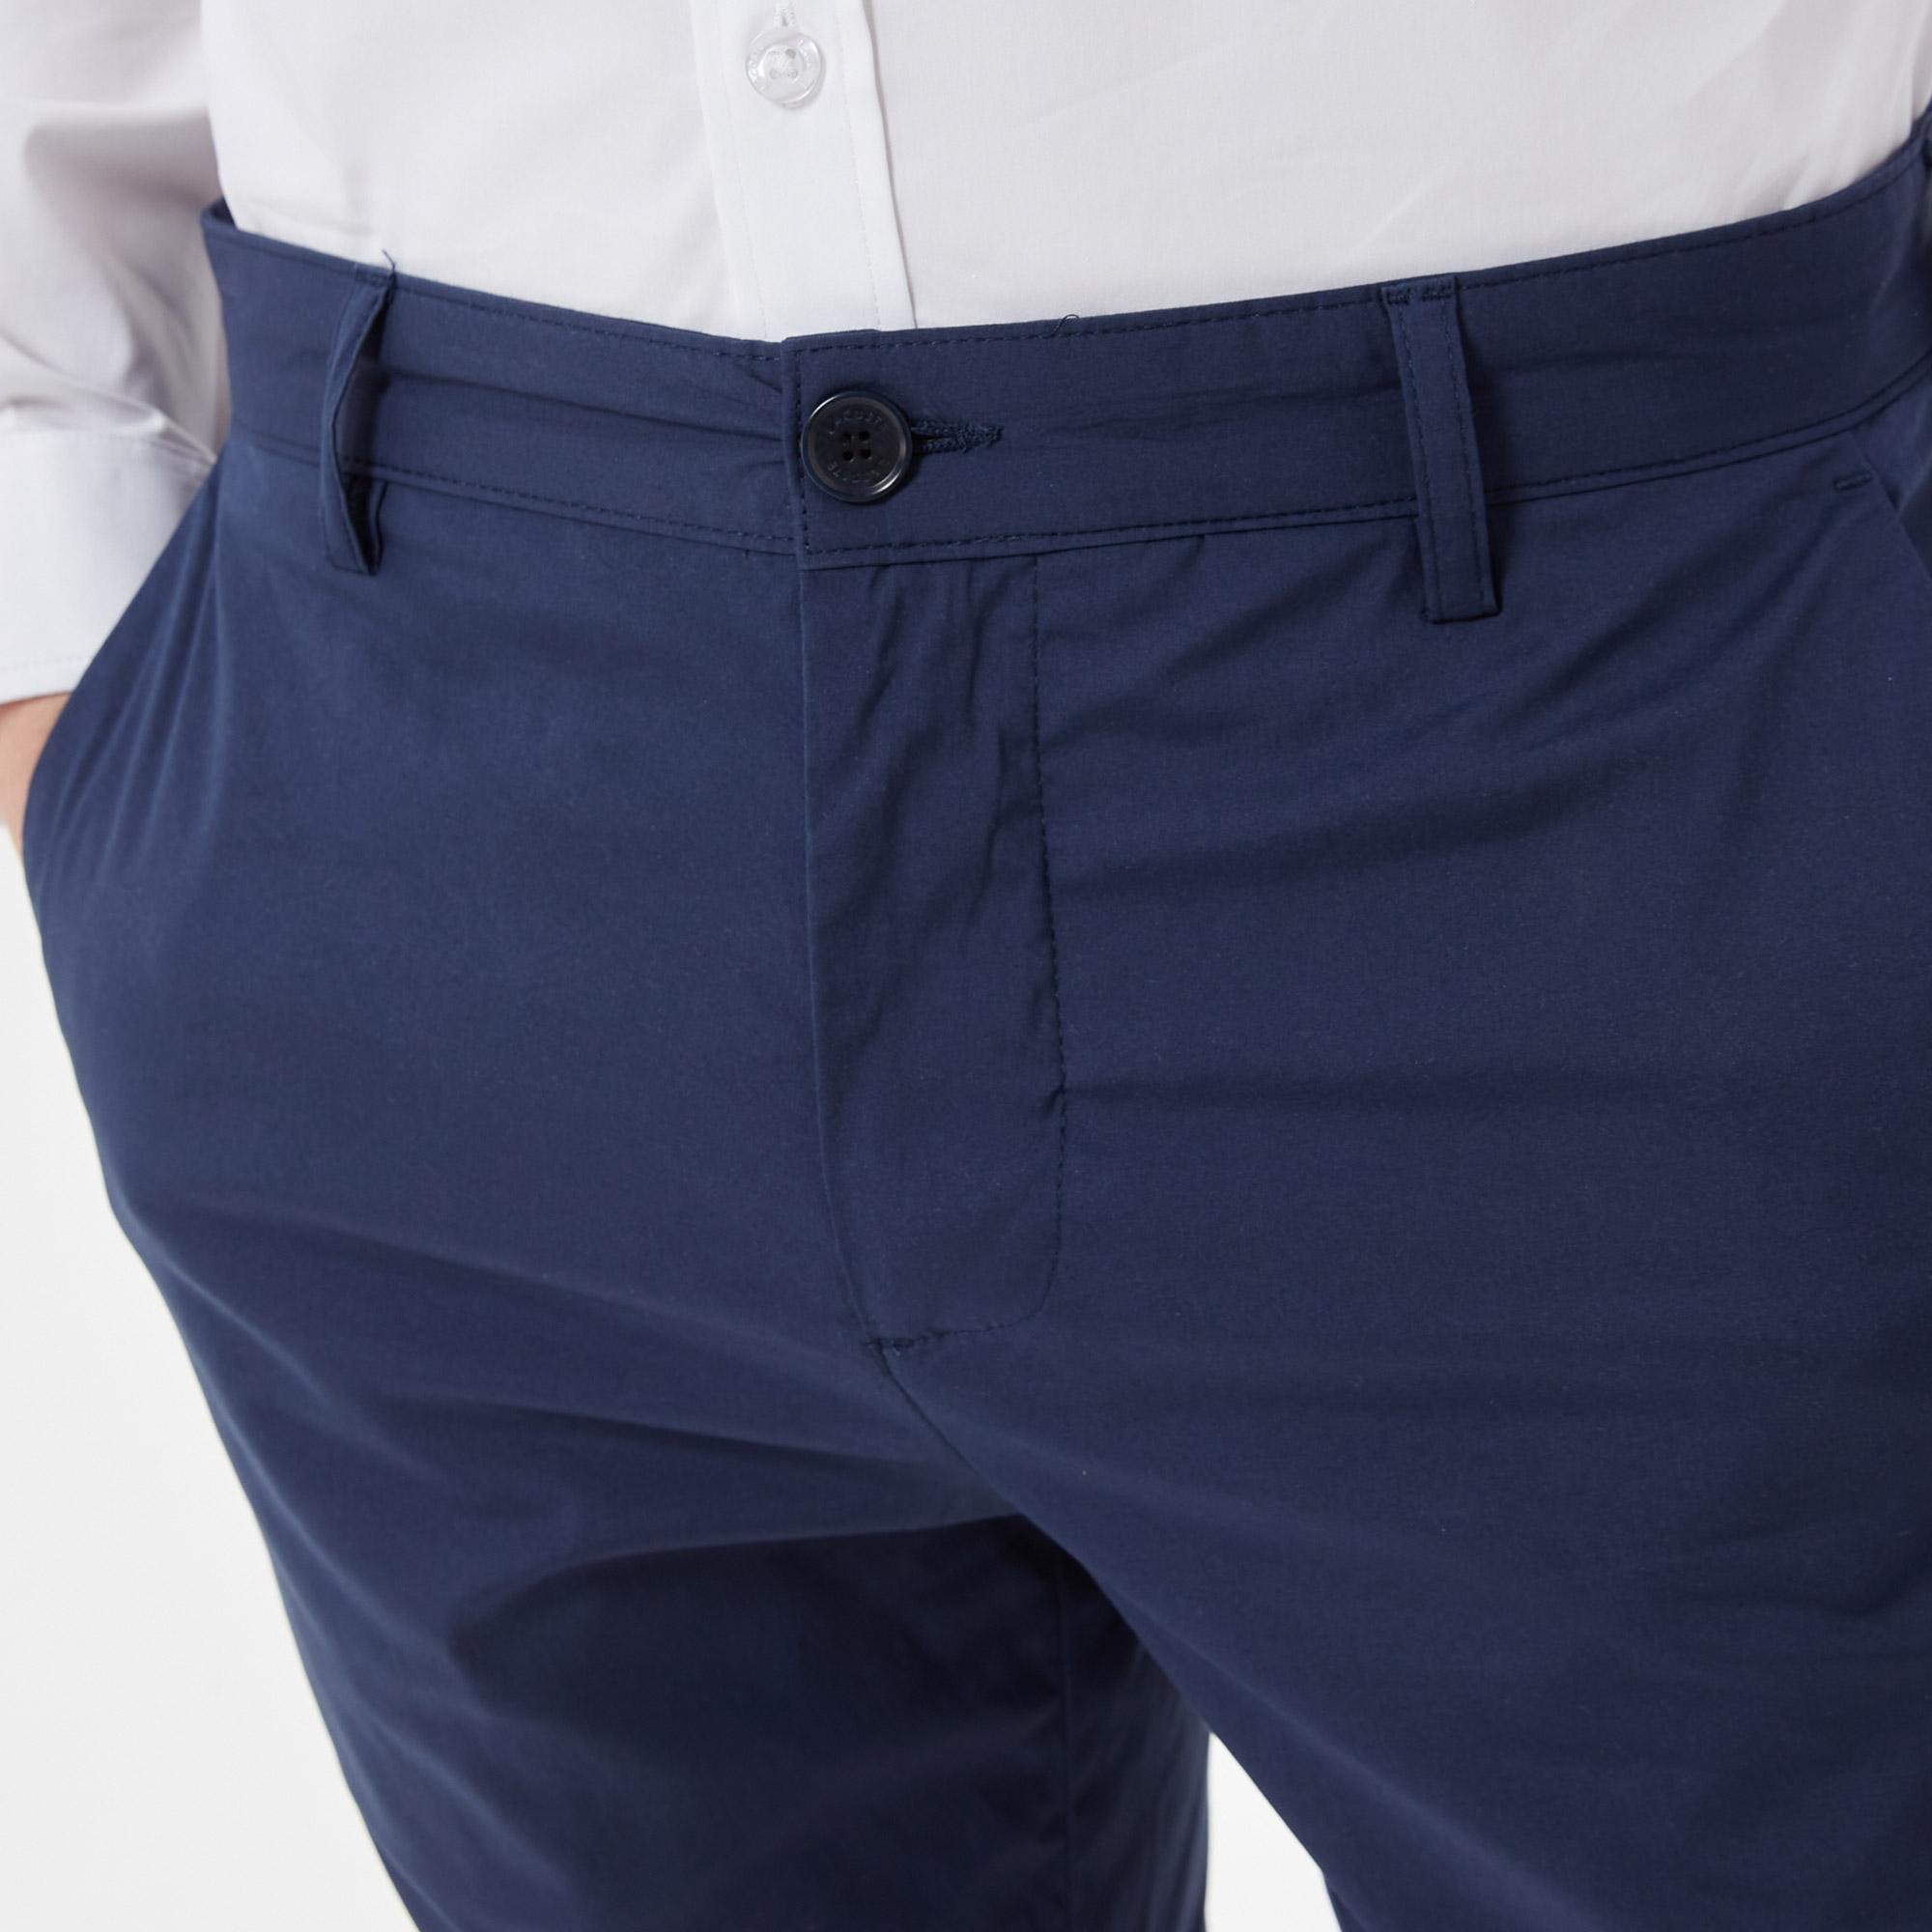 Lacoste Men's Slim Fit Trousers